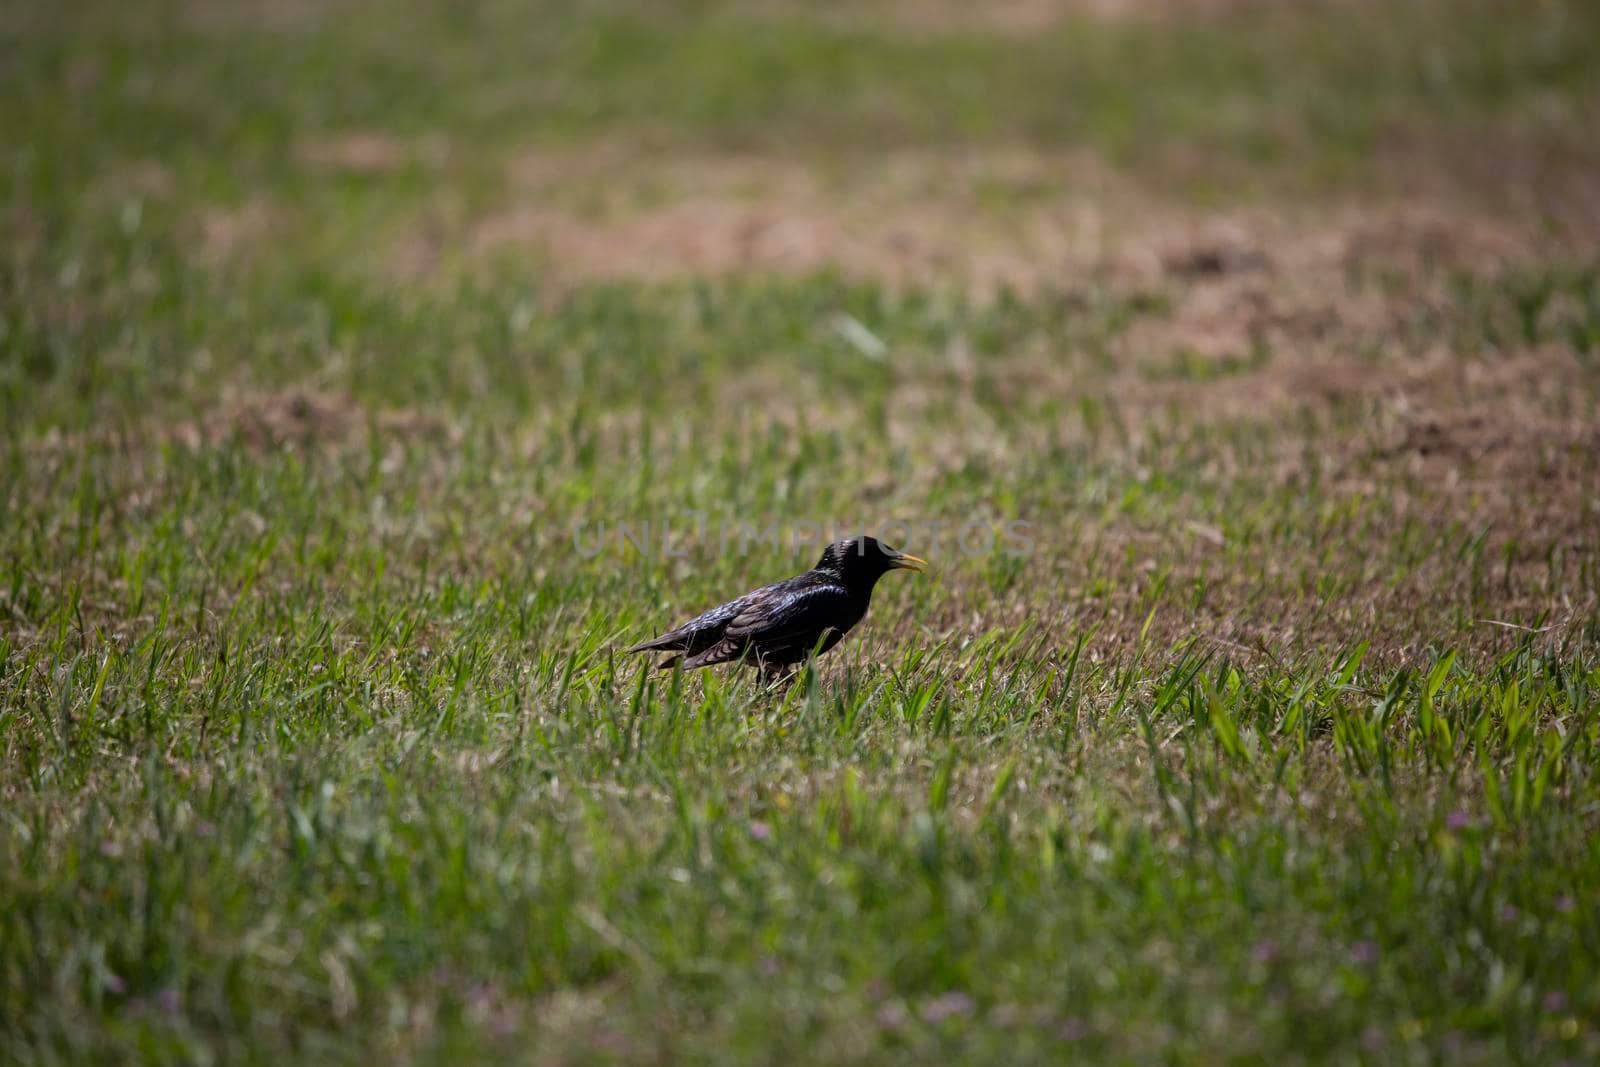 European starling (Sturnus vulgaris) foraging in a meadow